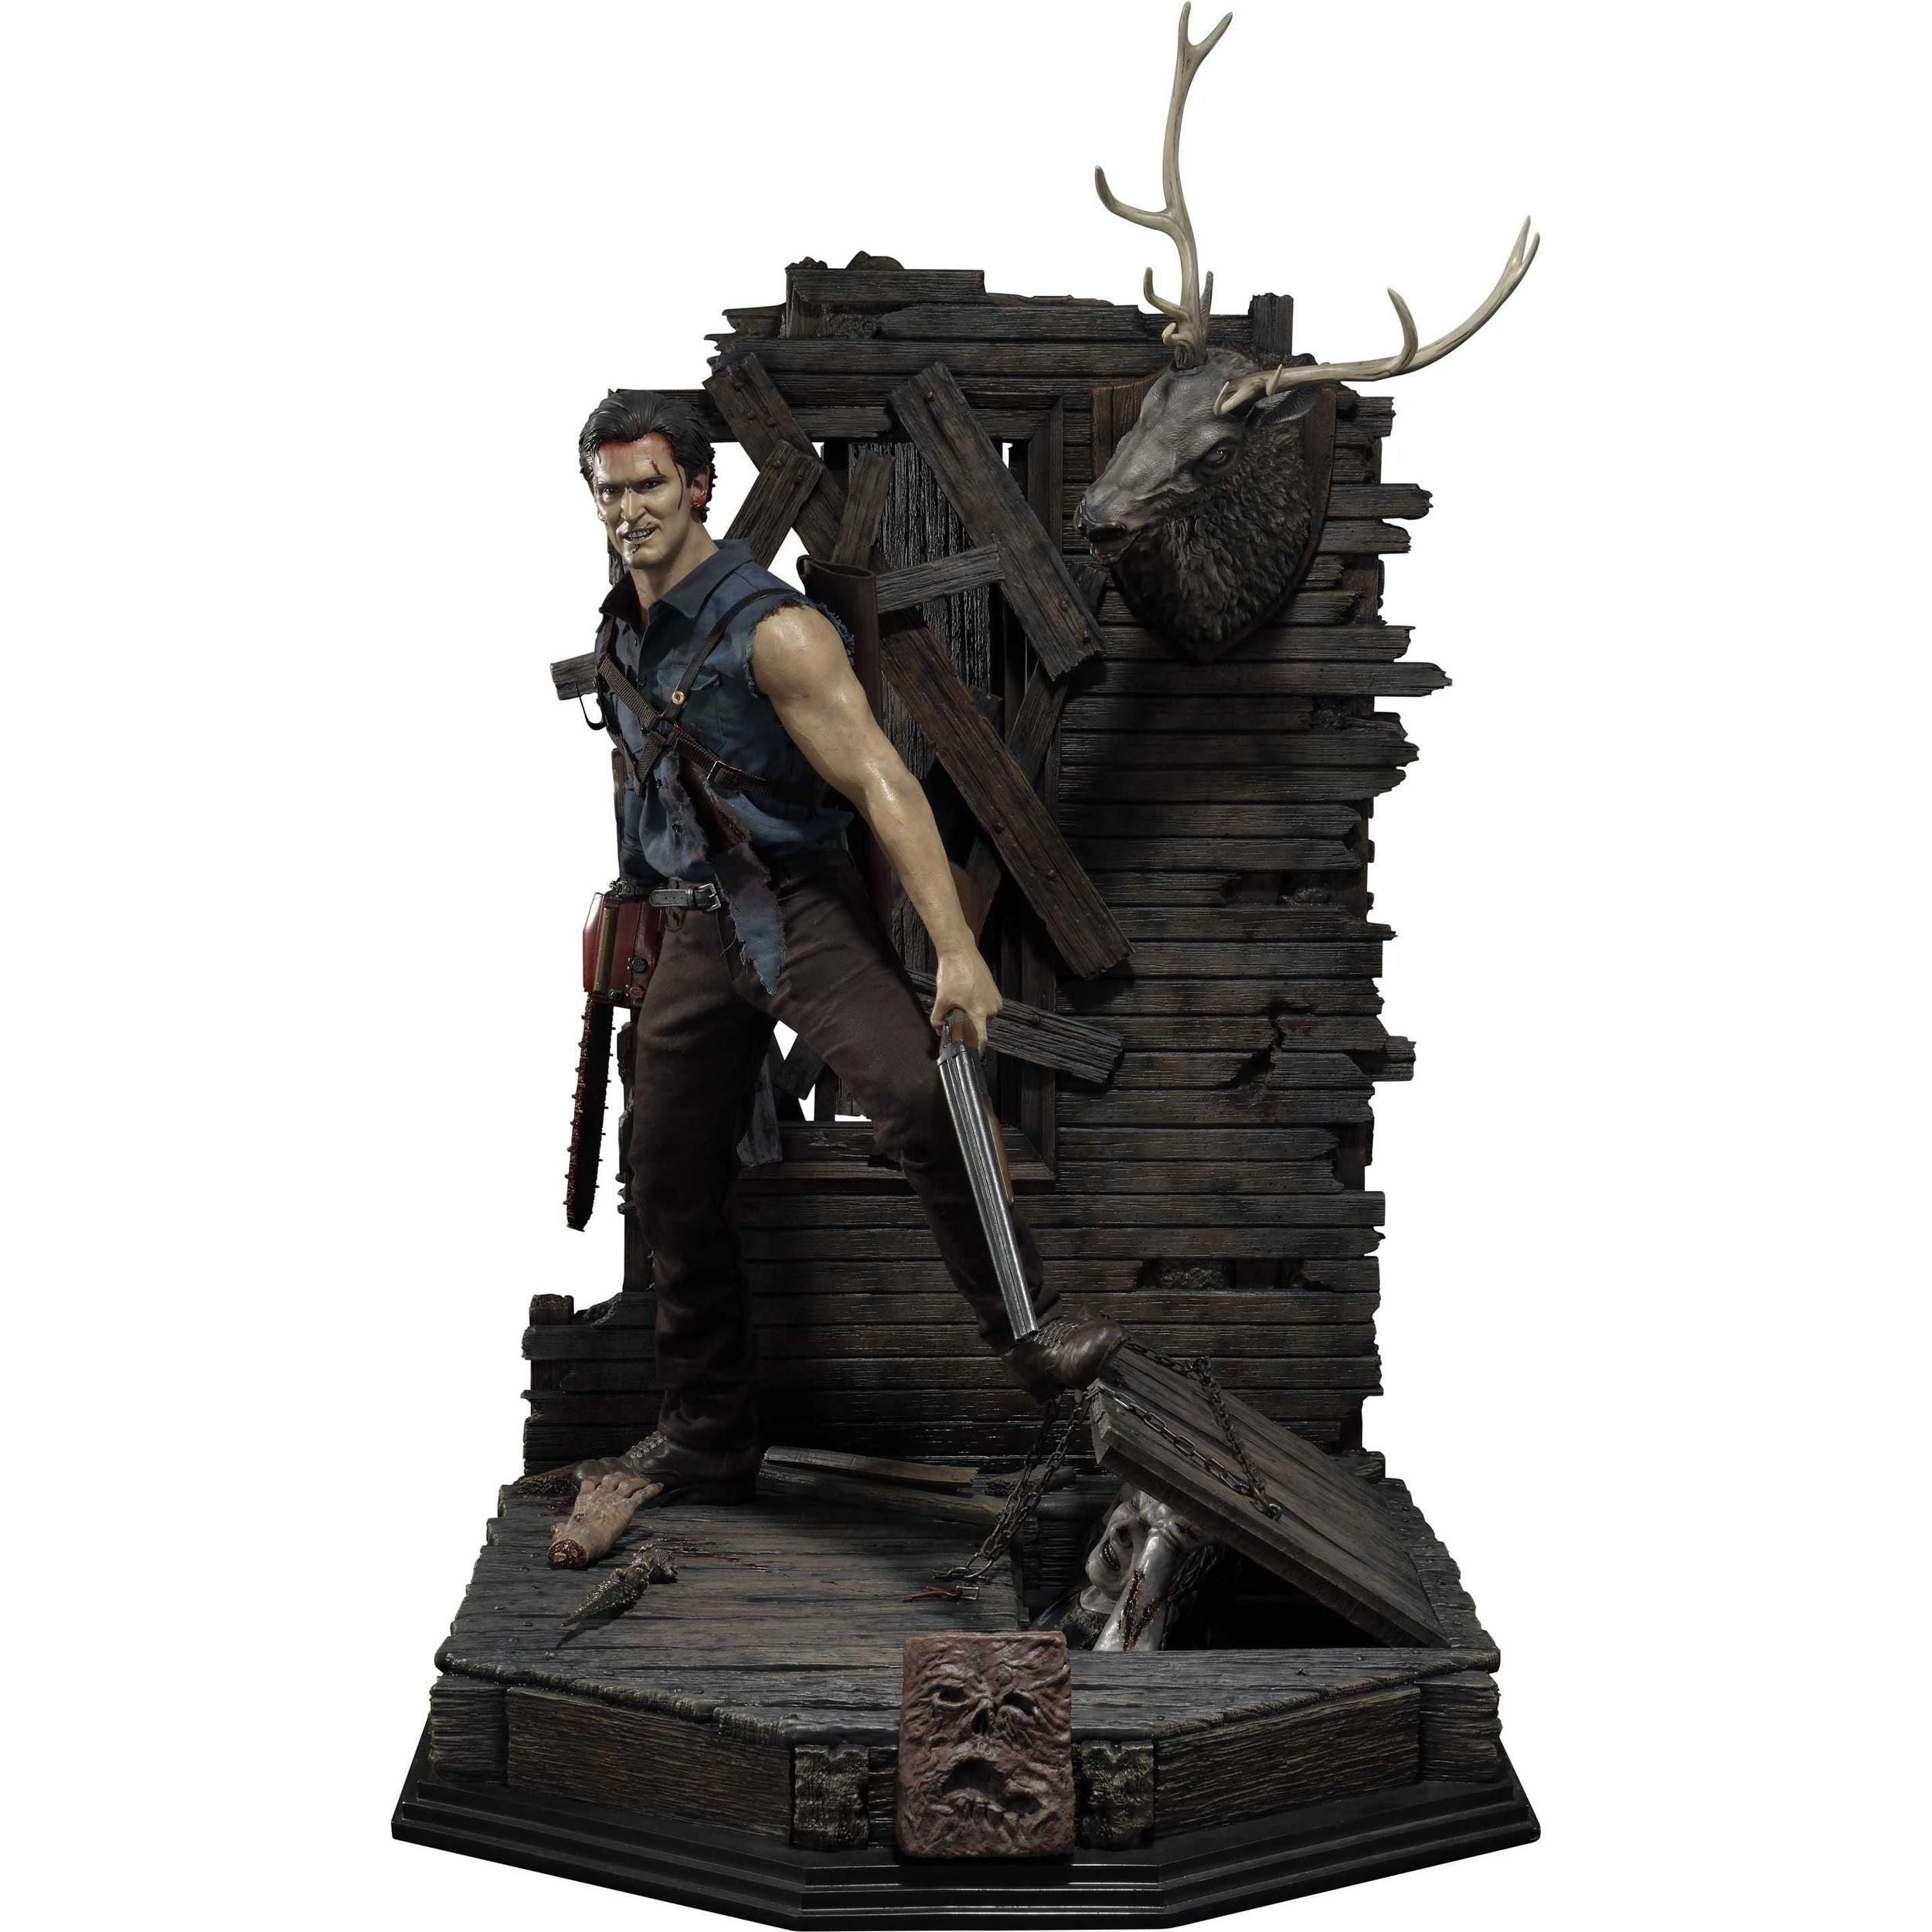 Evil Dead 2 - Ash Williams Statue by Prime 1 Studio - The Toyark - News